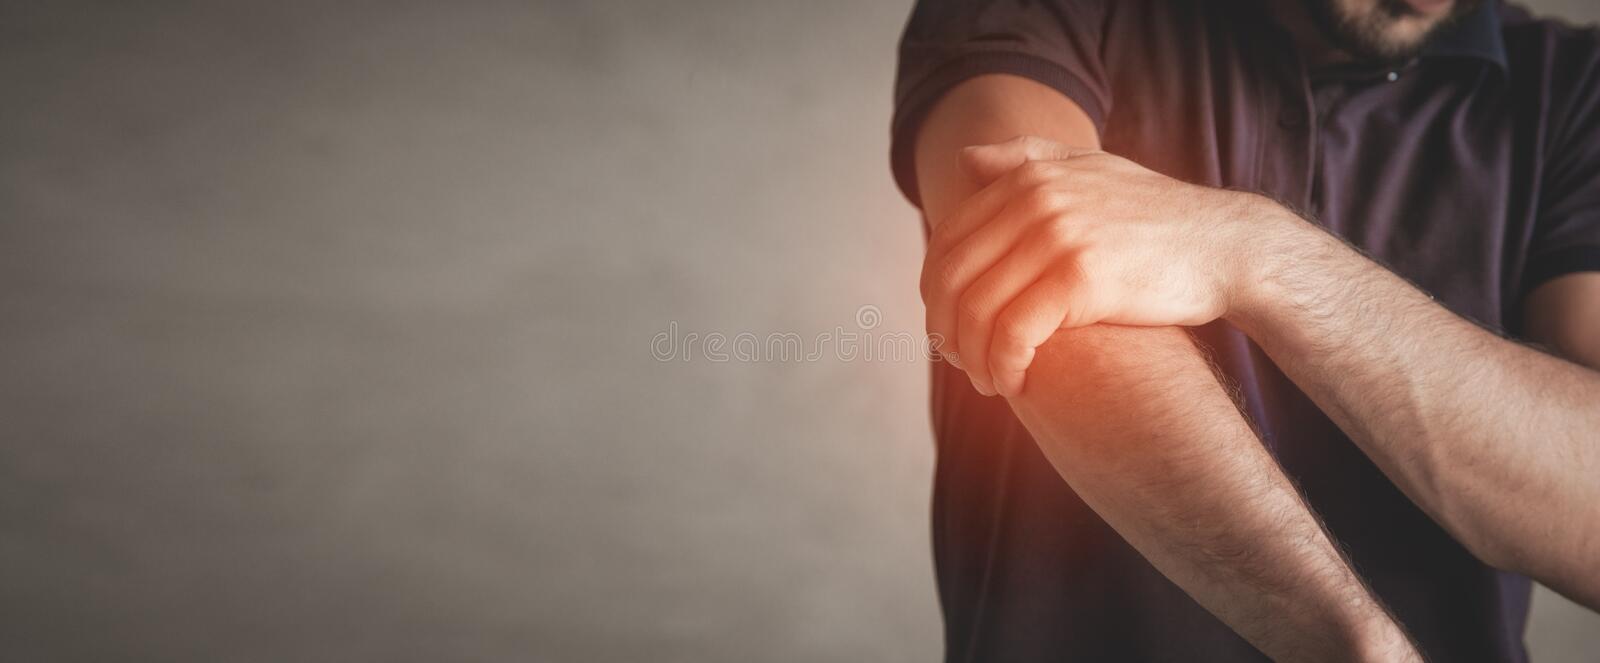 caucasian-man-elbow-pain-pain-relief-concept-caucasian-man-elbow-pain-pain-relief-concept-179808710.jpg